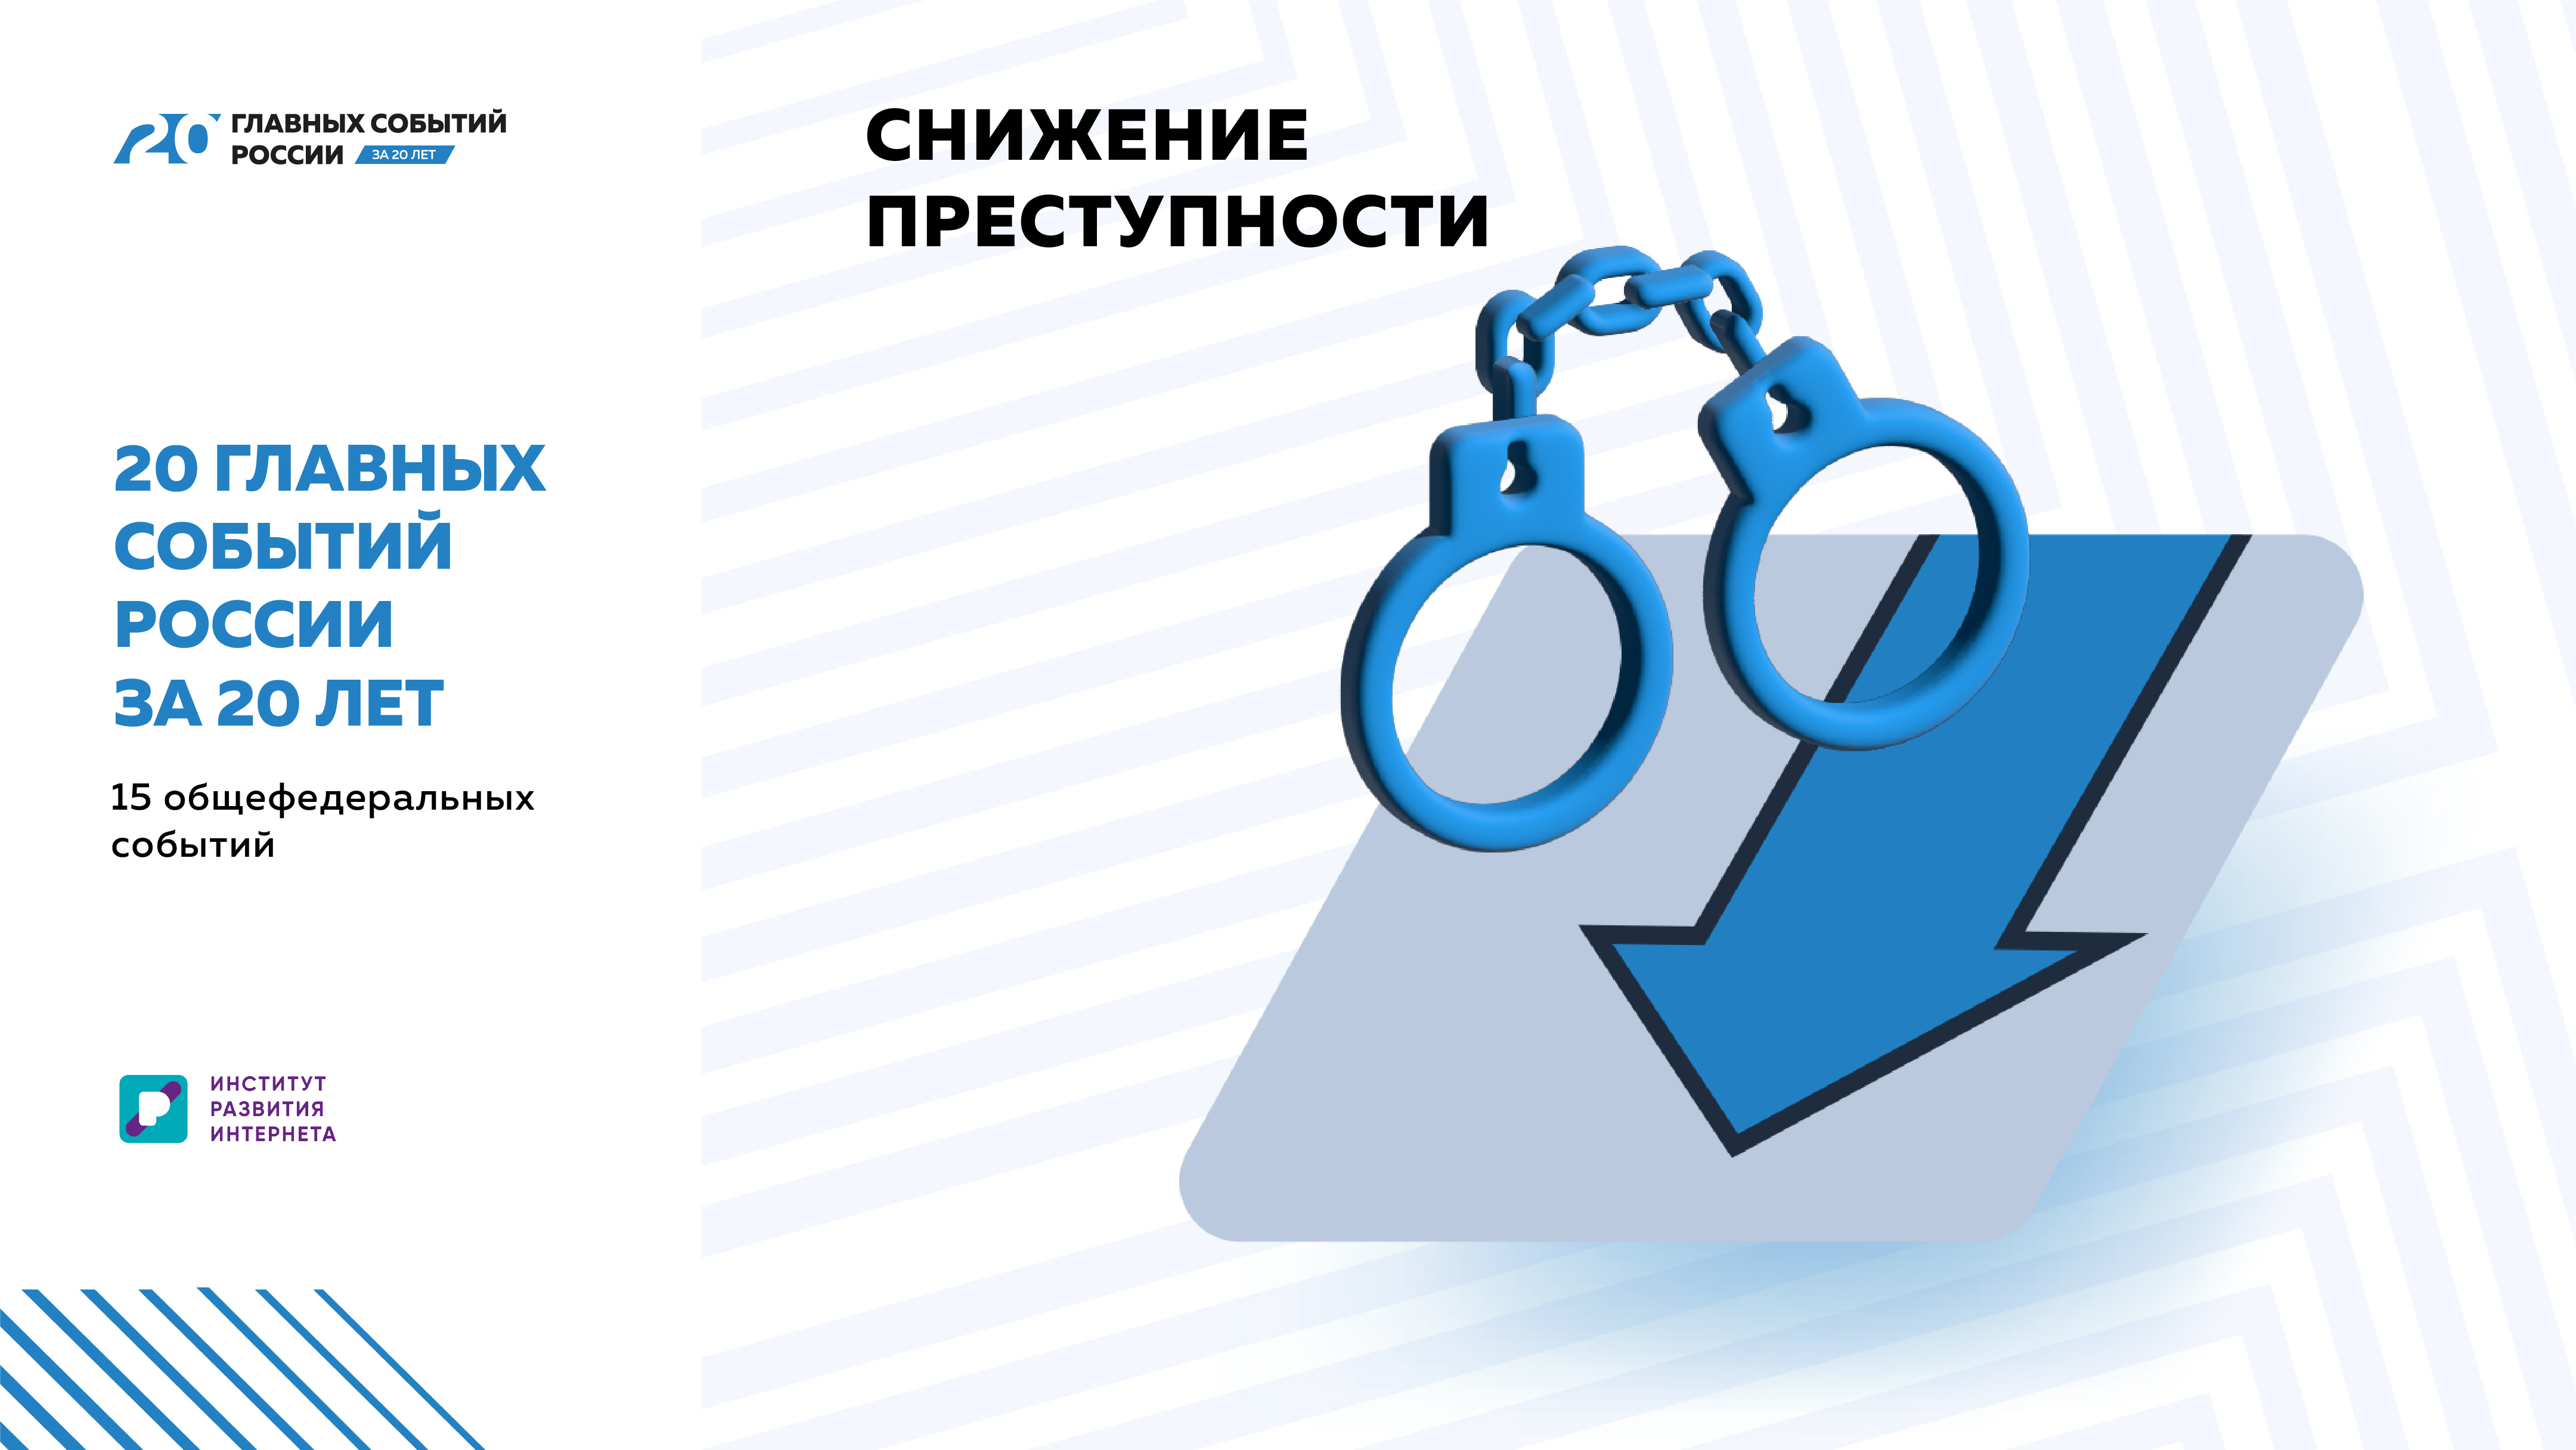 «20 главных событий России за 20 лет»: Снижение преступности